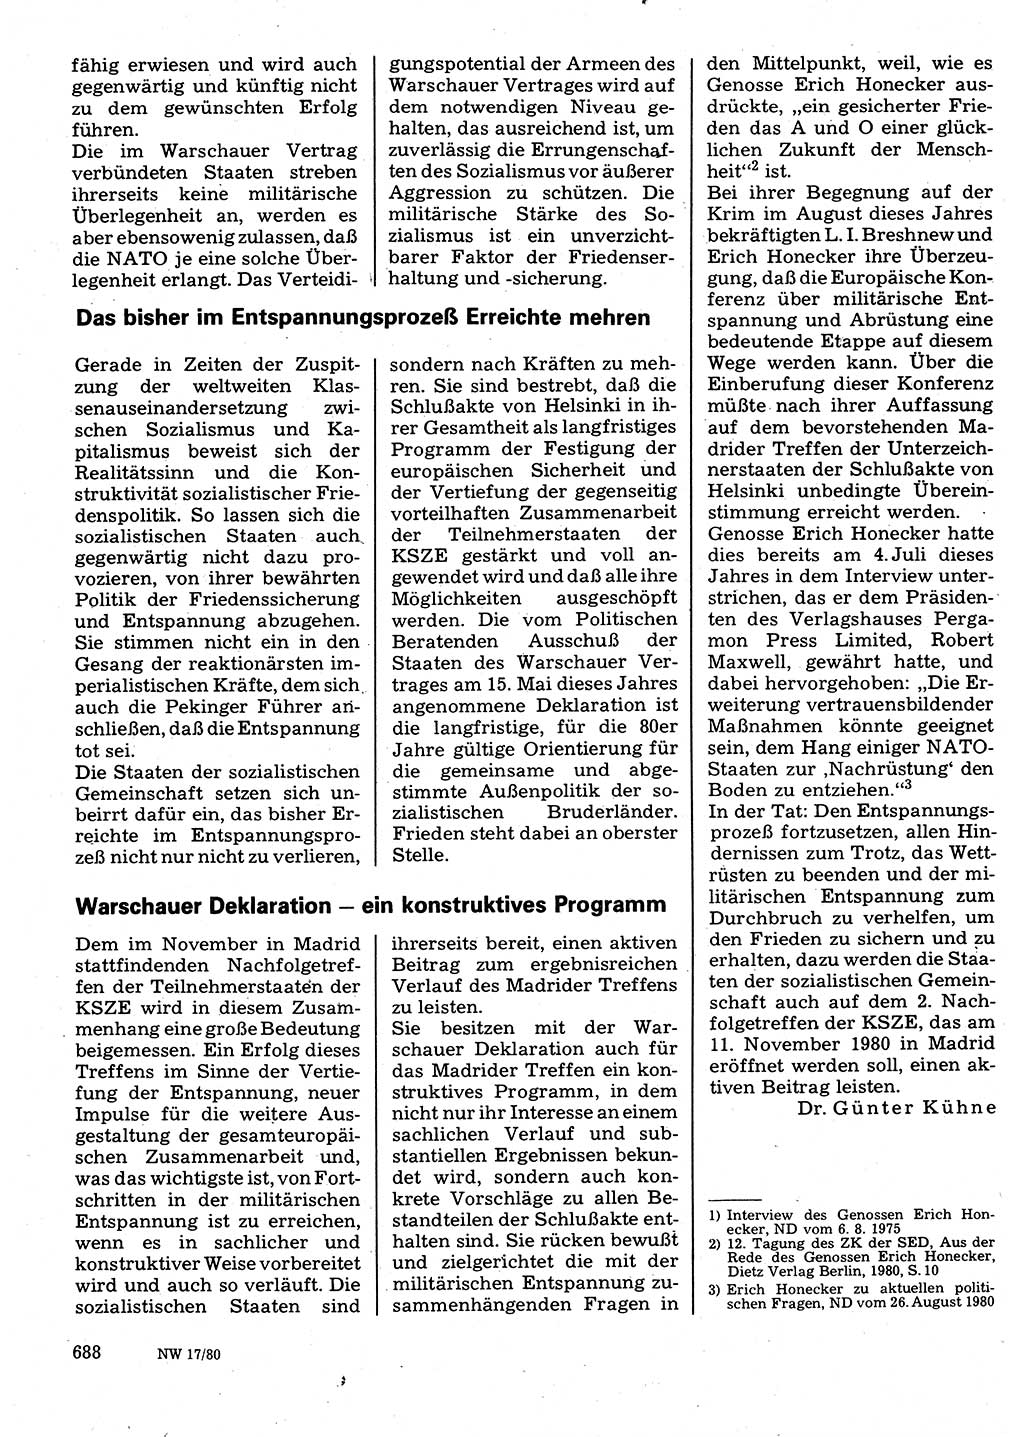 Neuer Weg (NW), Organ des Zentralkomitees (ZK) der SED (Sozialistische Einheitspartei Deutschlands) für Fragen des Parteilebens, 35. Jahrgang [Deutsche Demokratische Republik (DDR)] 1980, Seite 688 (NW ZK SED DDR 1980, S. 688)